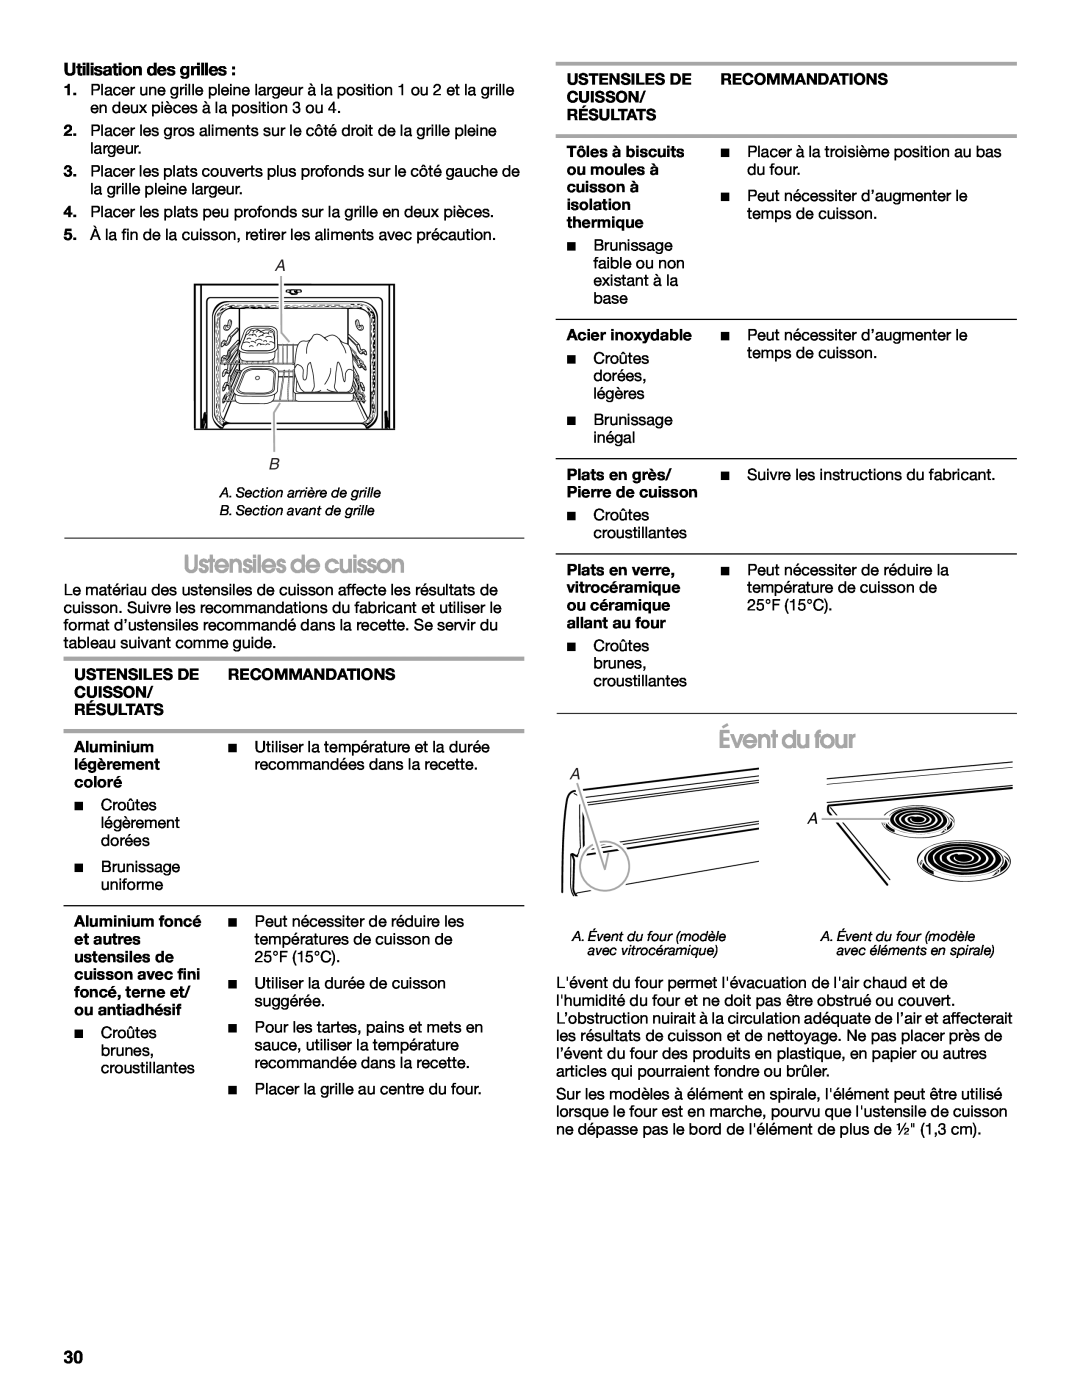 Whirlpool YIES366RS1 manual Évent du four, Utilisation des grilles, Ustensiles de cuisson 